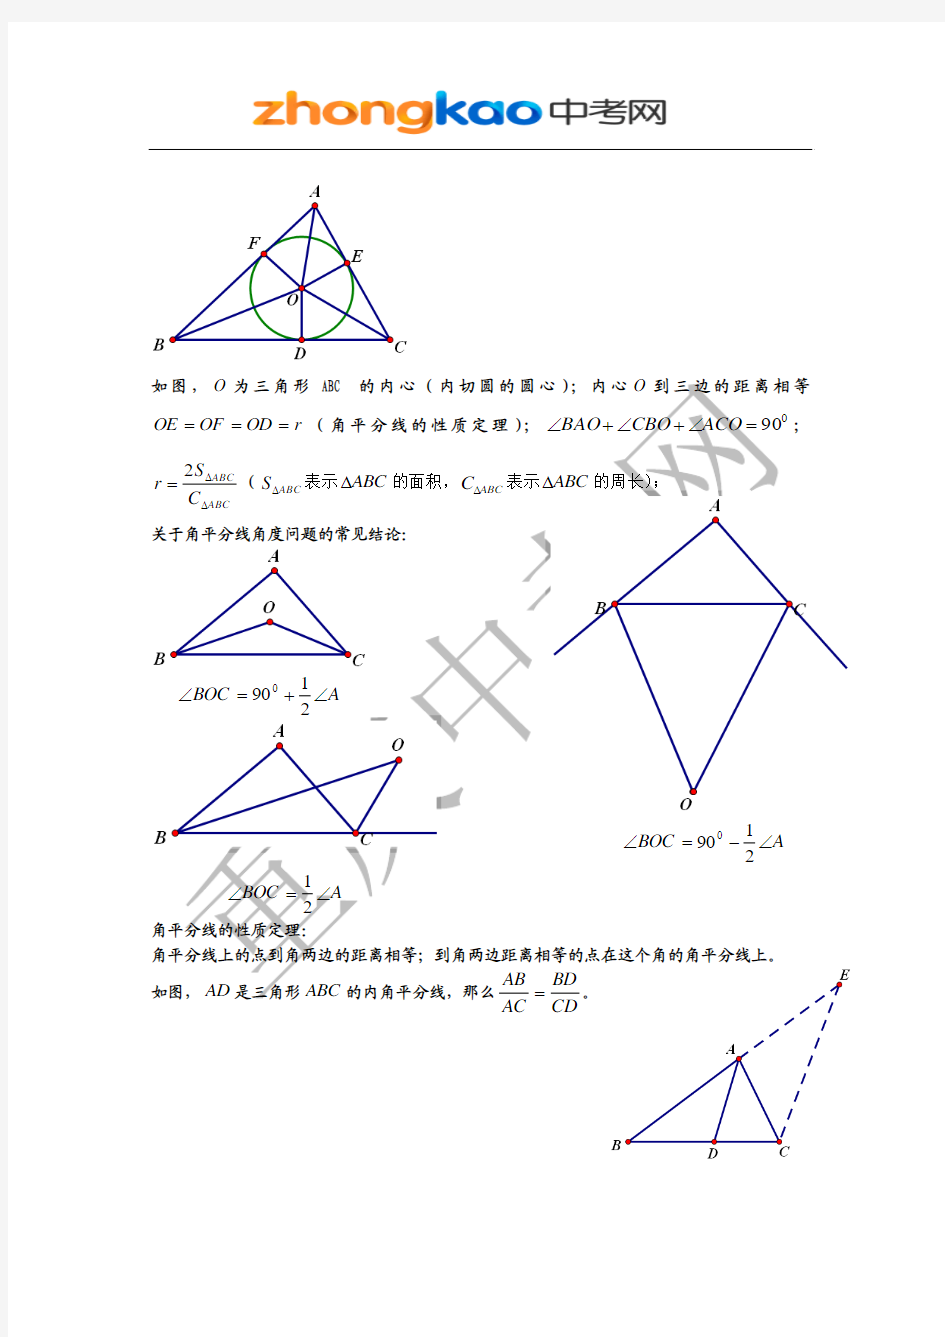 初中几何模型及常见结论的总结归纳[1]